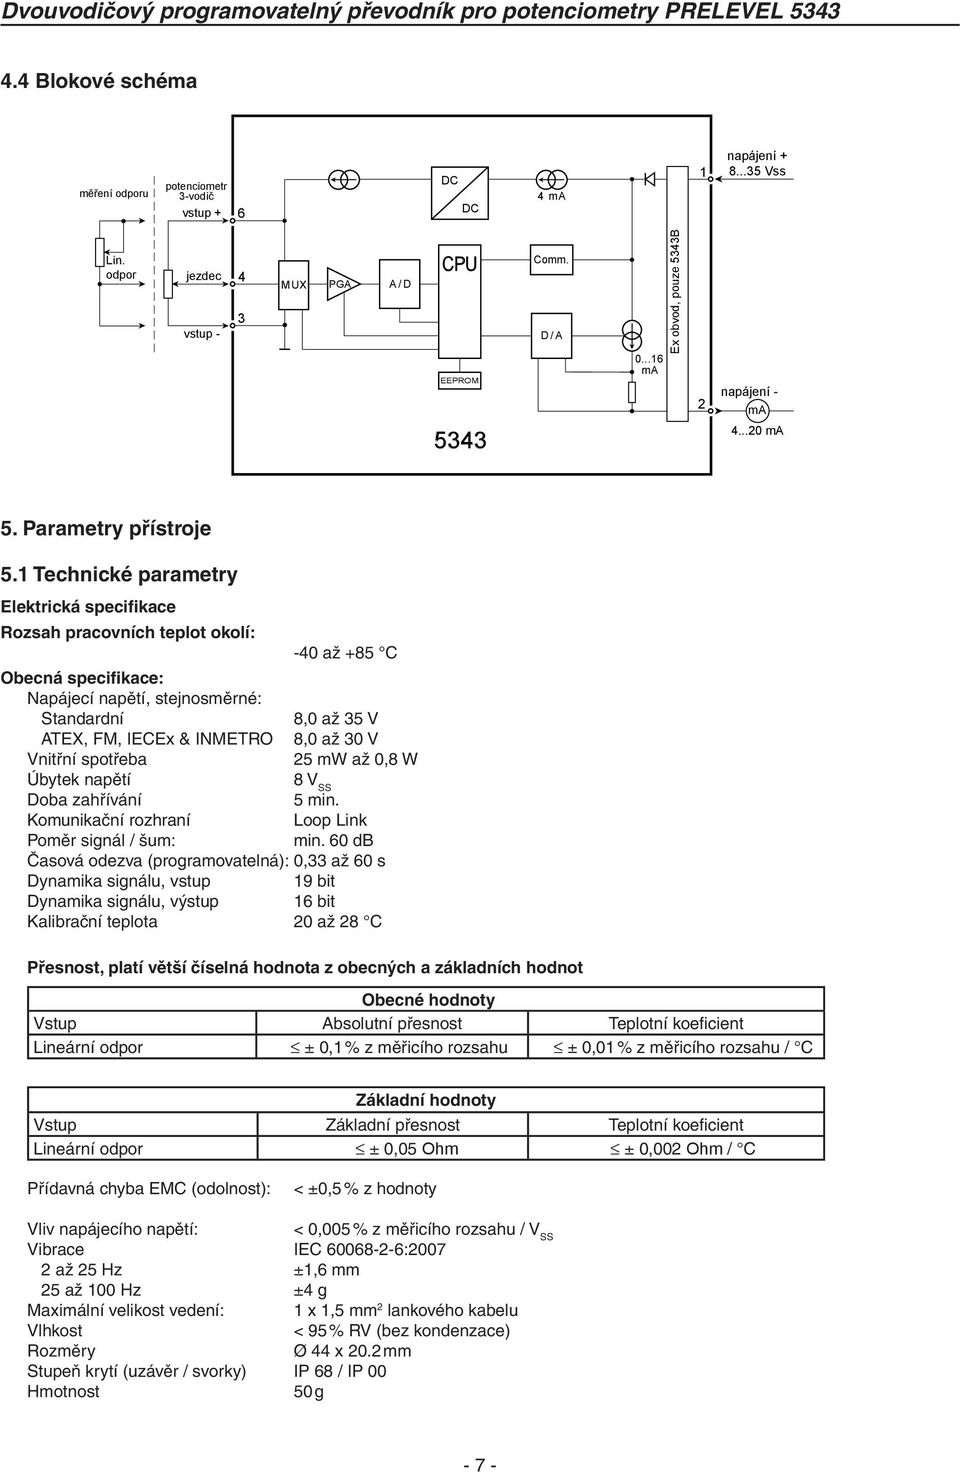 1 Technické parametry Elektrická specifikace Rozsah pracovních teplot okolí: -40 až +85 C Obecná specifikace: Napájecí napětí, stejnosměrné: Standardní 8,0 až 35 V ATEX, FM, IECEx & INMETRO 8,0 až 30